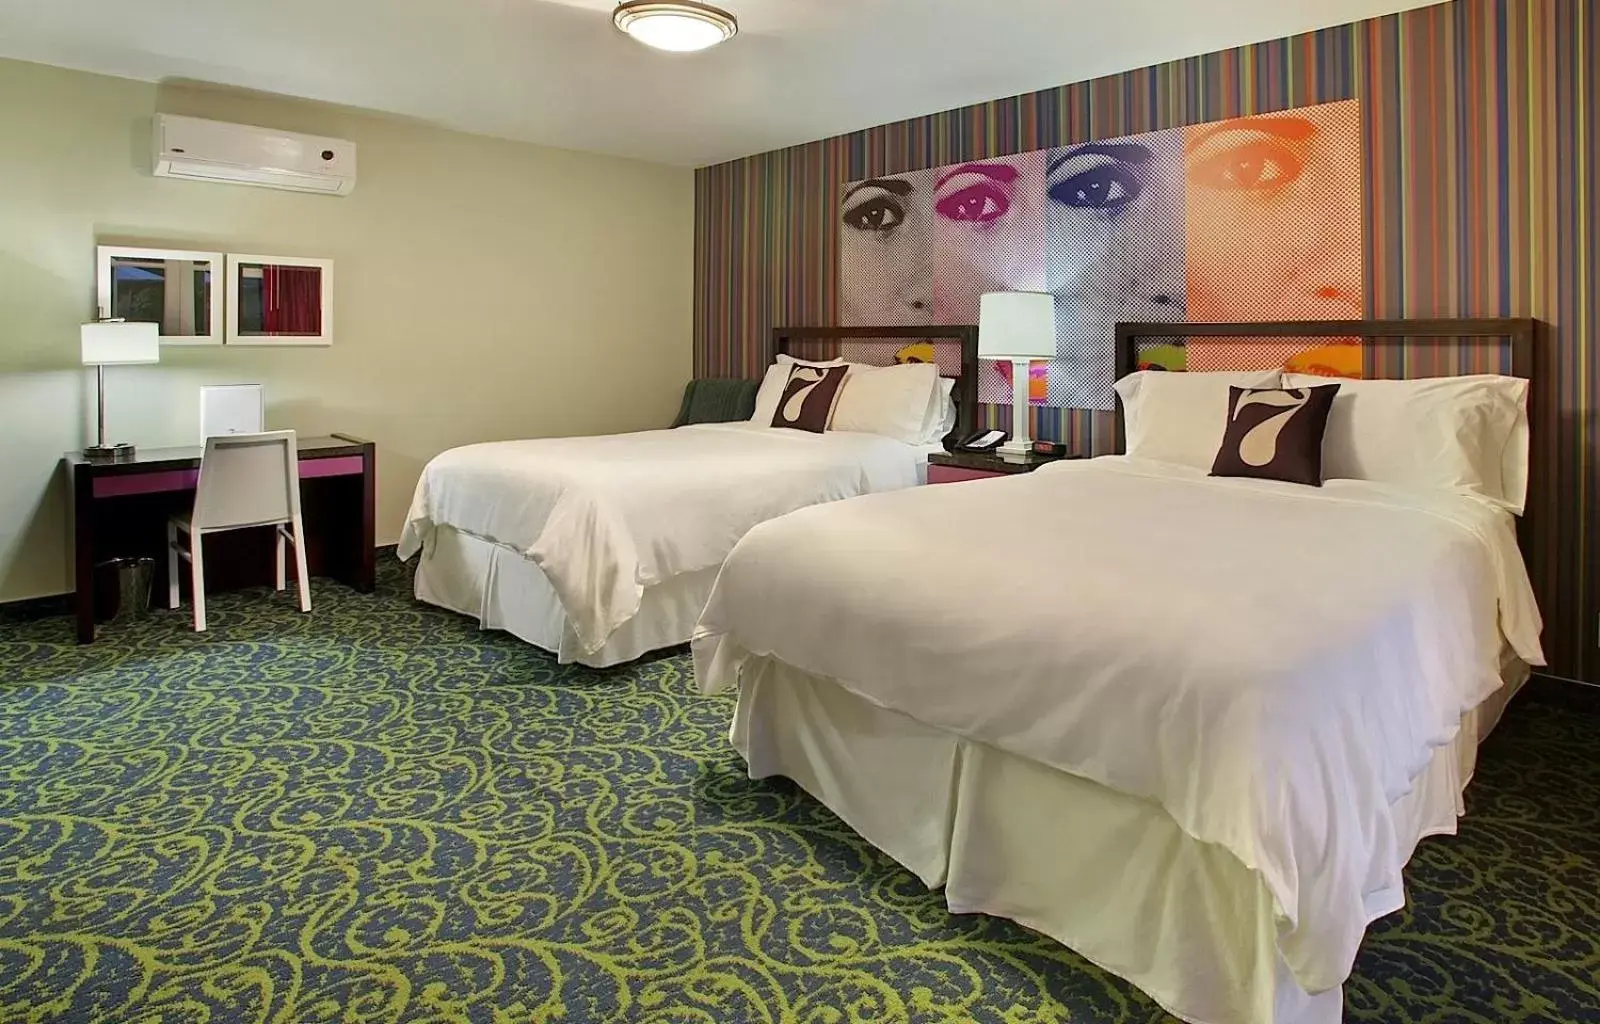 Bedroom, Room Photo in 7 Springs Inn & Suites